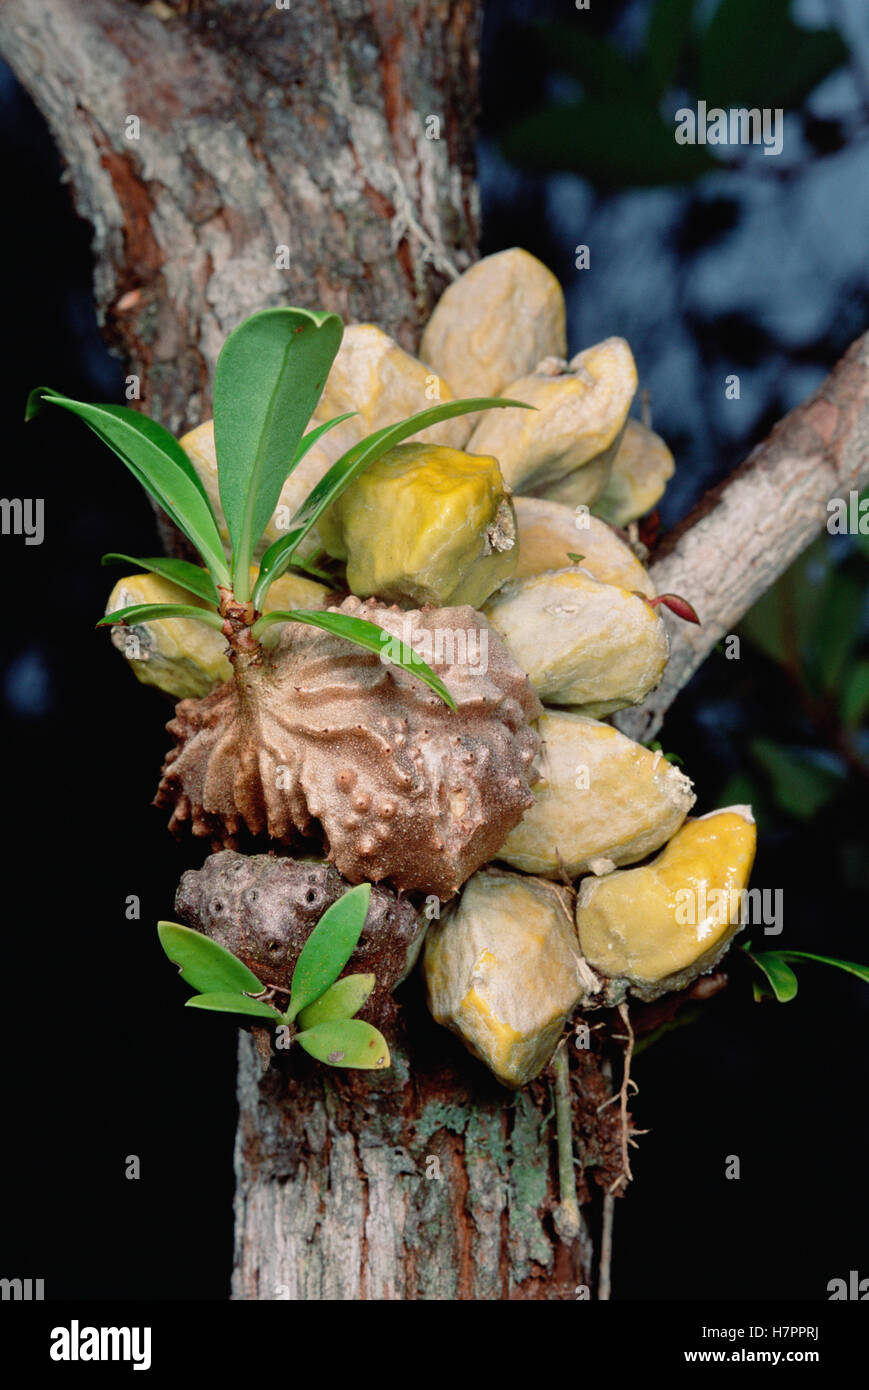 Planta Hydnophytum Ant (sp) que crece enlucidos con troncos de árbol, proporciona Philidris (sp) Las hormigas, con un hogar, aprovechando los nutrientes Foto de stock